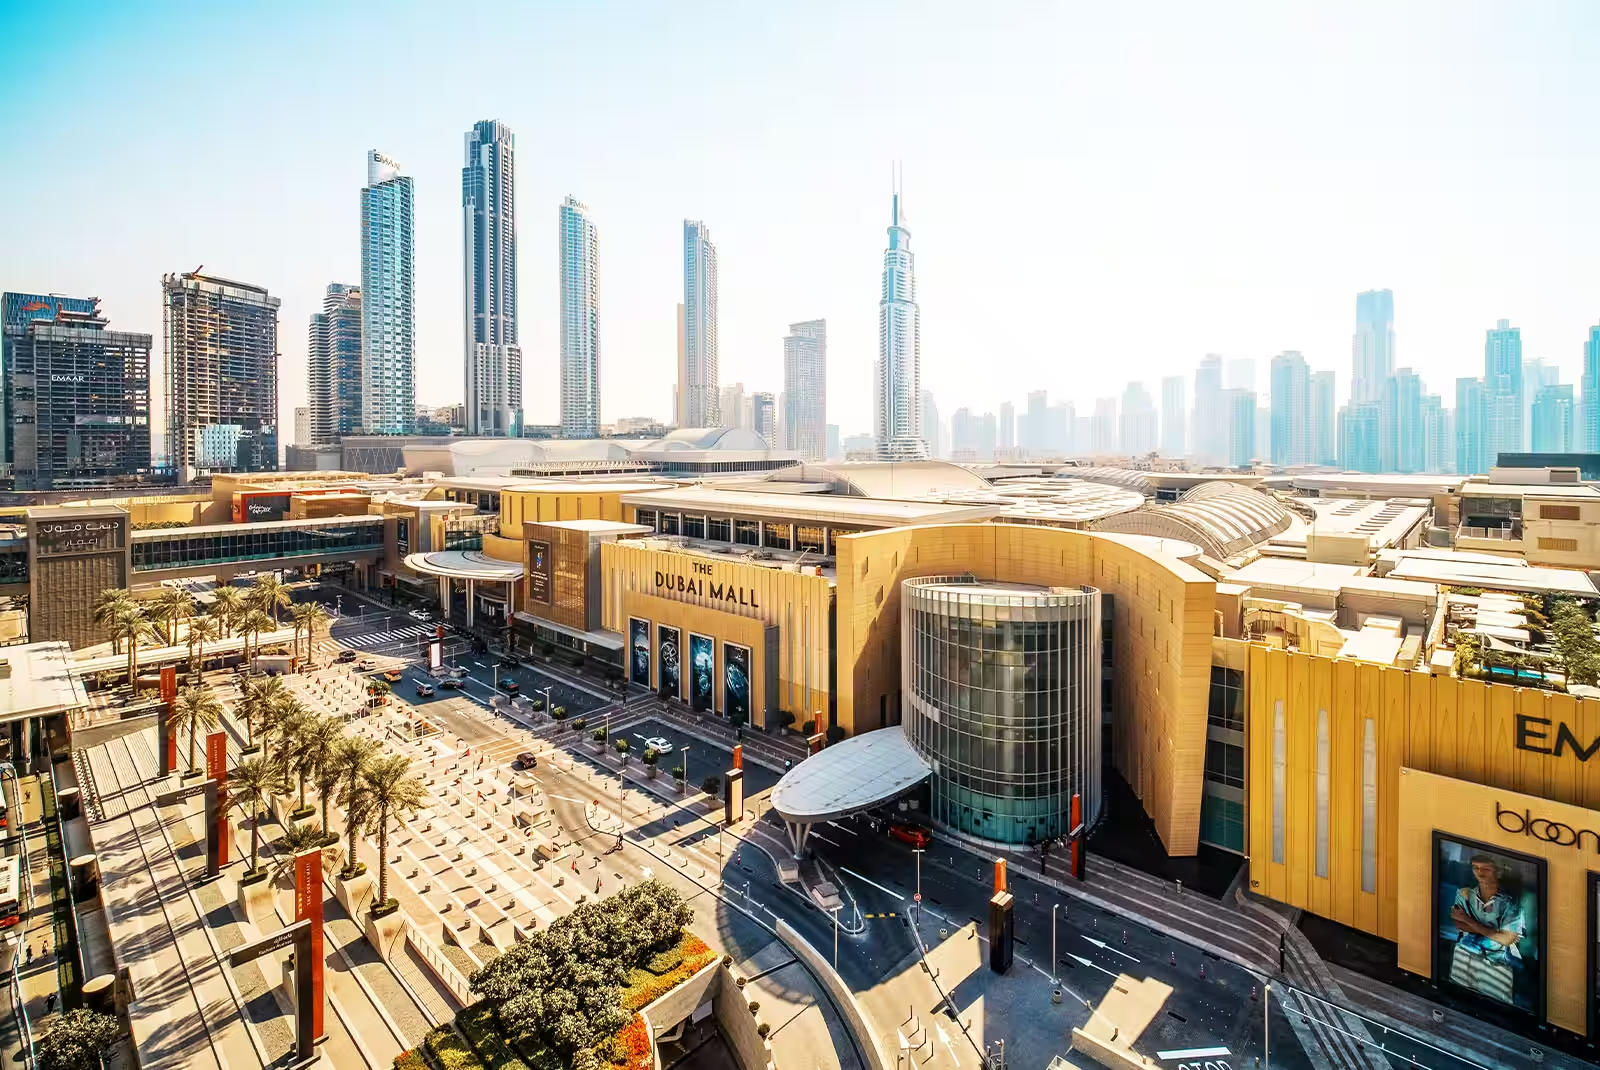 Dubai mall - Địa điểm du lịch hấp dẫn | TOPTOUR